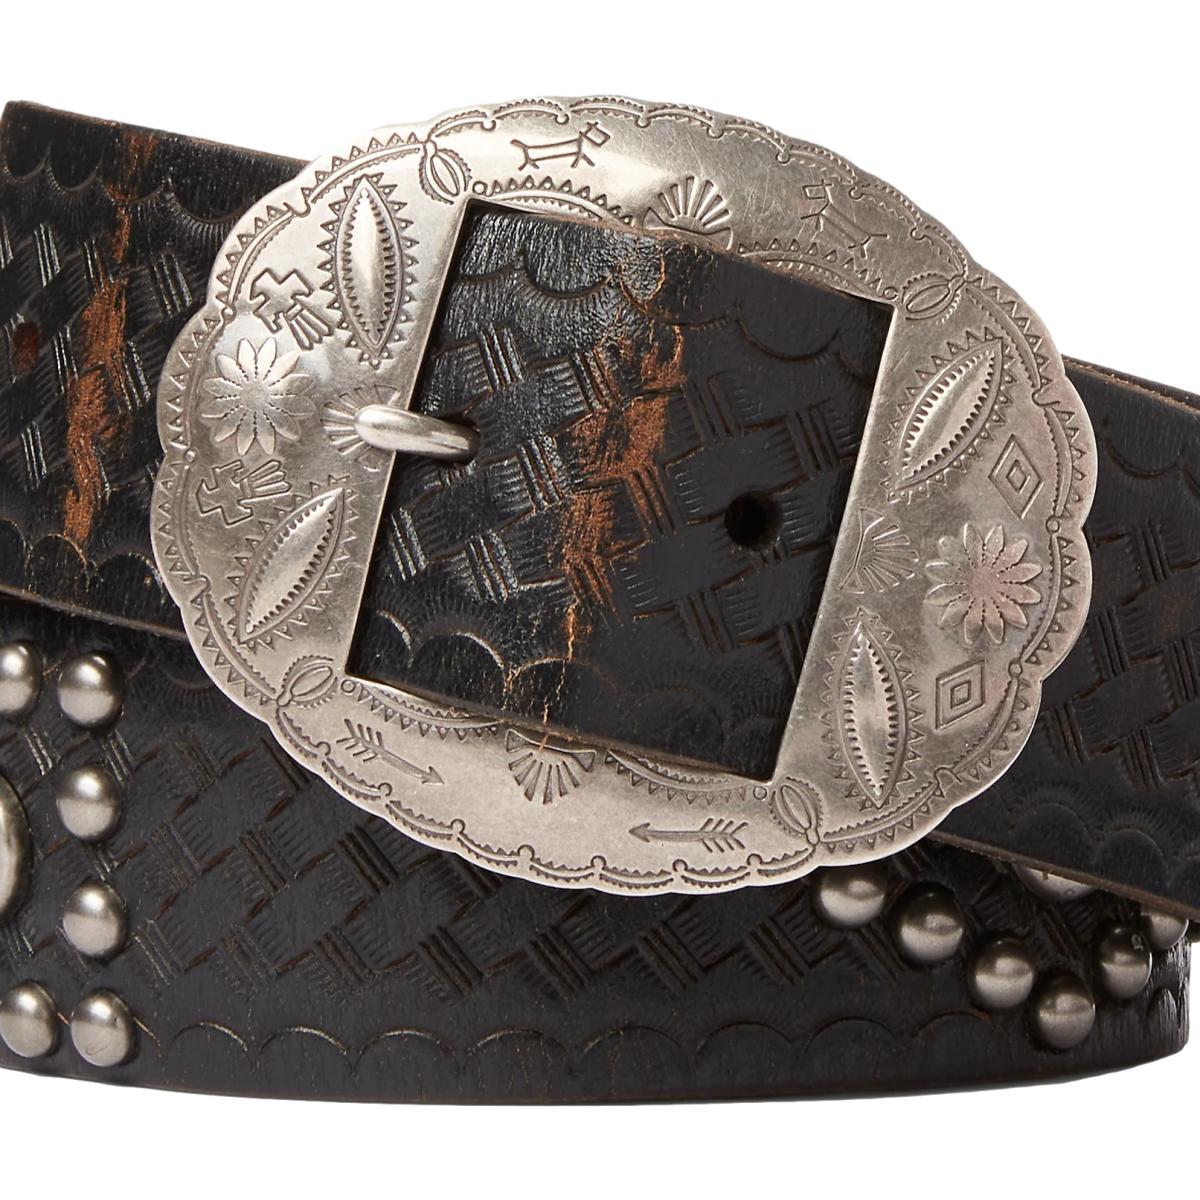 Studded Leather Belt Black Over Brown - Belts